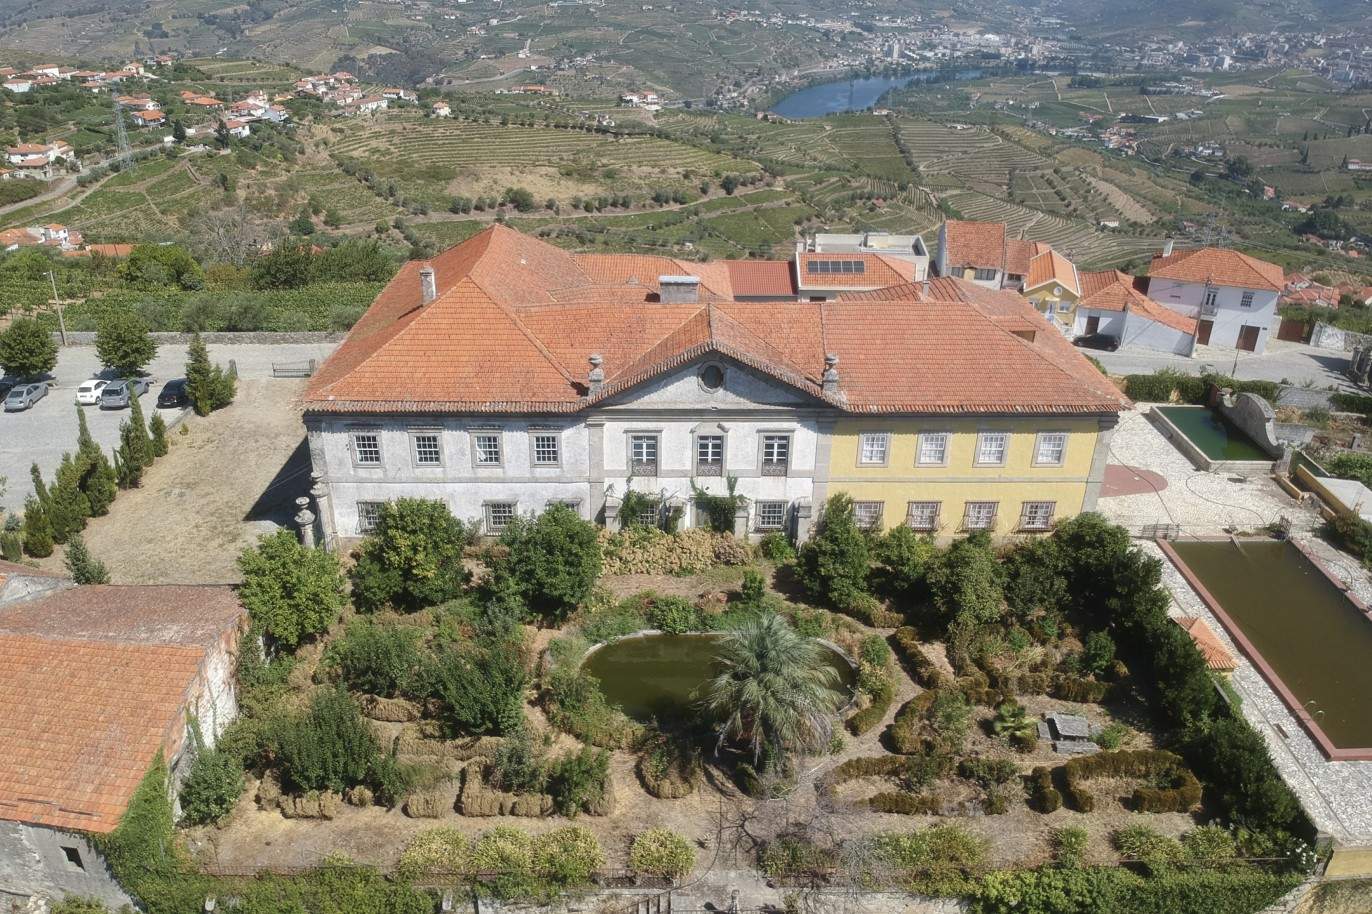 Venta: Palacete para restaurar con jardines y fuente centenaria, en Lamego, región vinícola del Alto Duero, norte de Portugal_207354